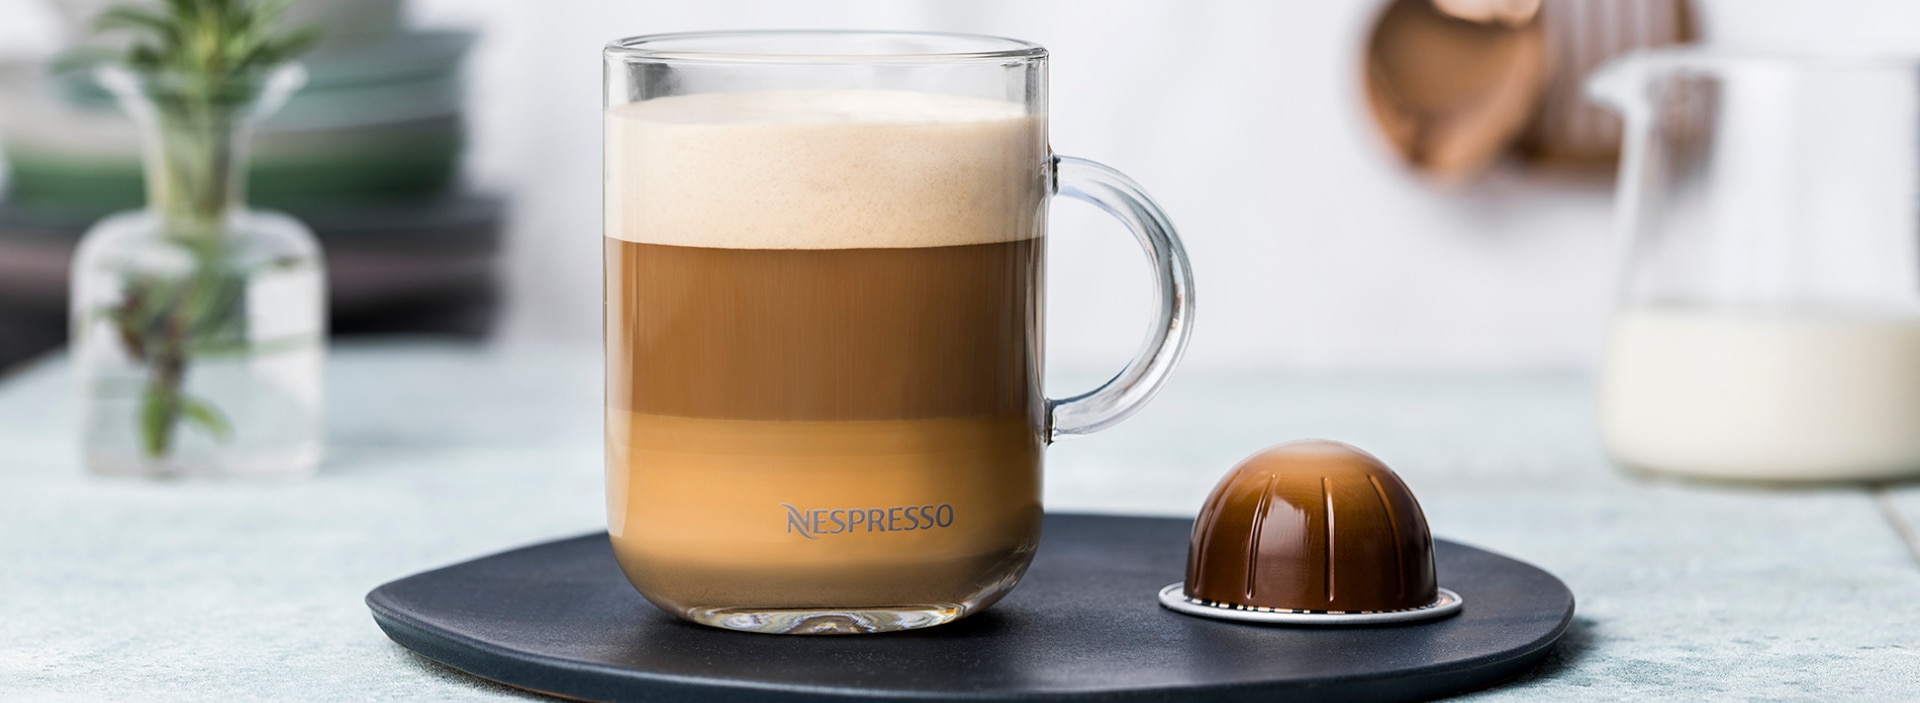 Crème Brûlée Cappuccino with Infiniment Double Espresso - Nespresso Recipes